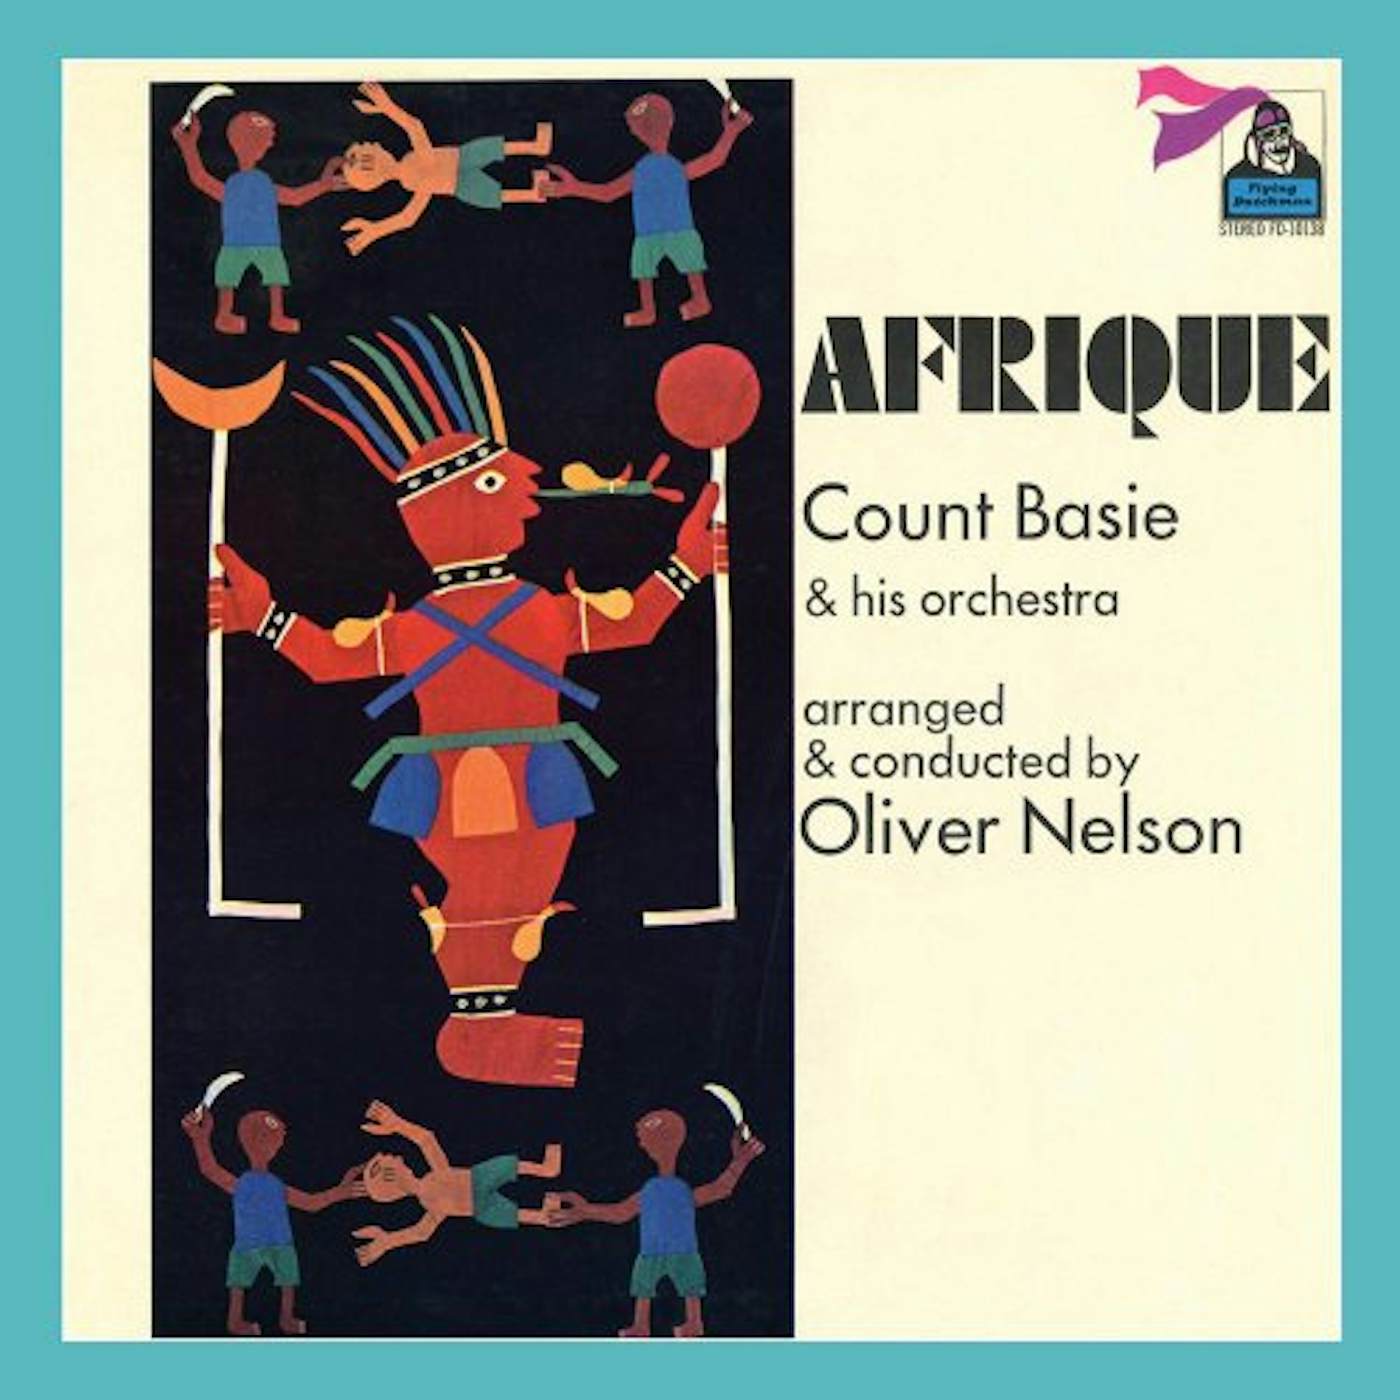 Count Basie AFRIQUE CD